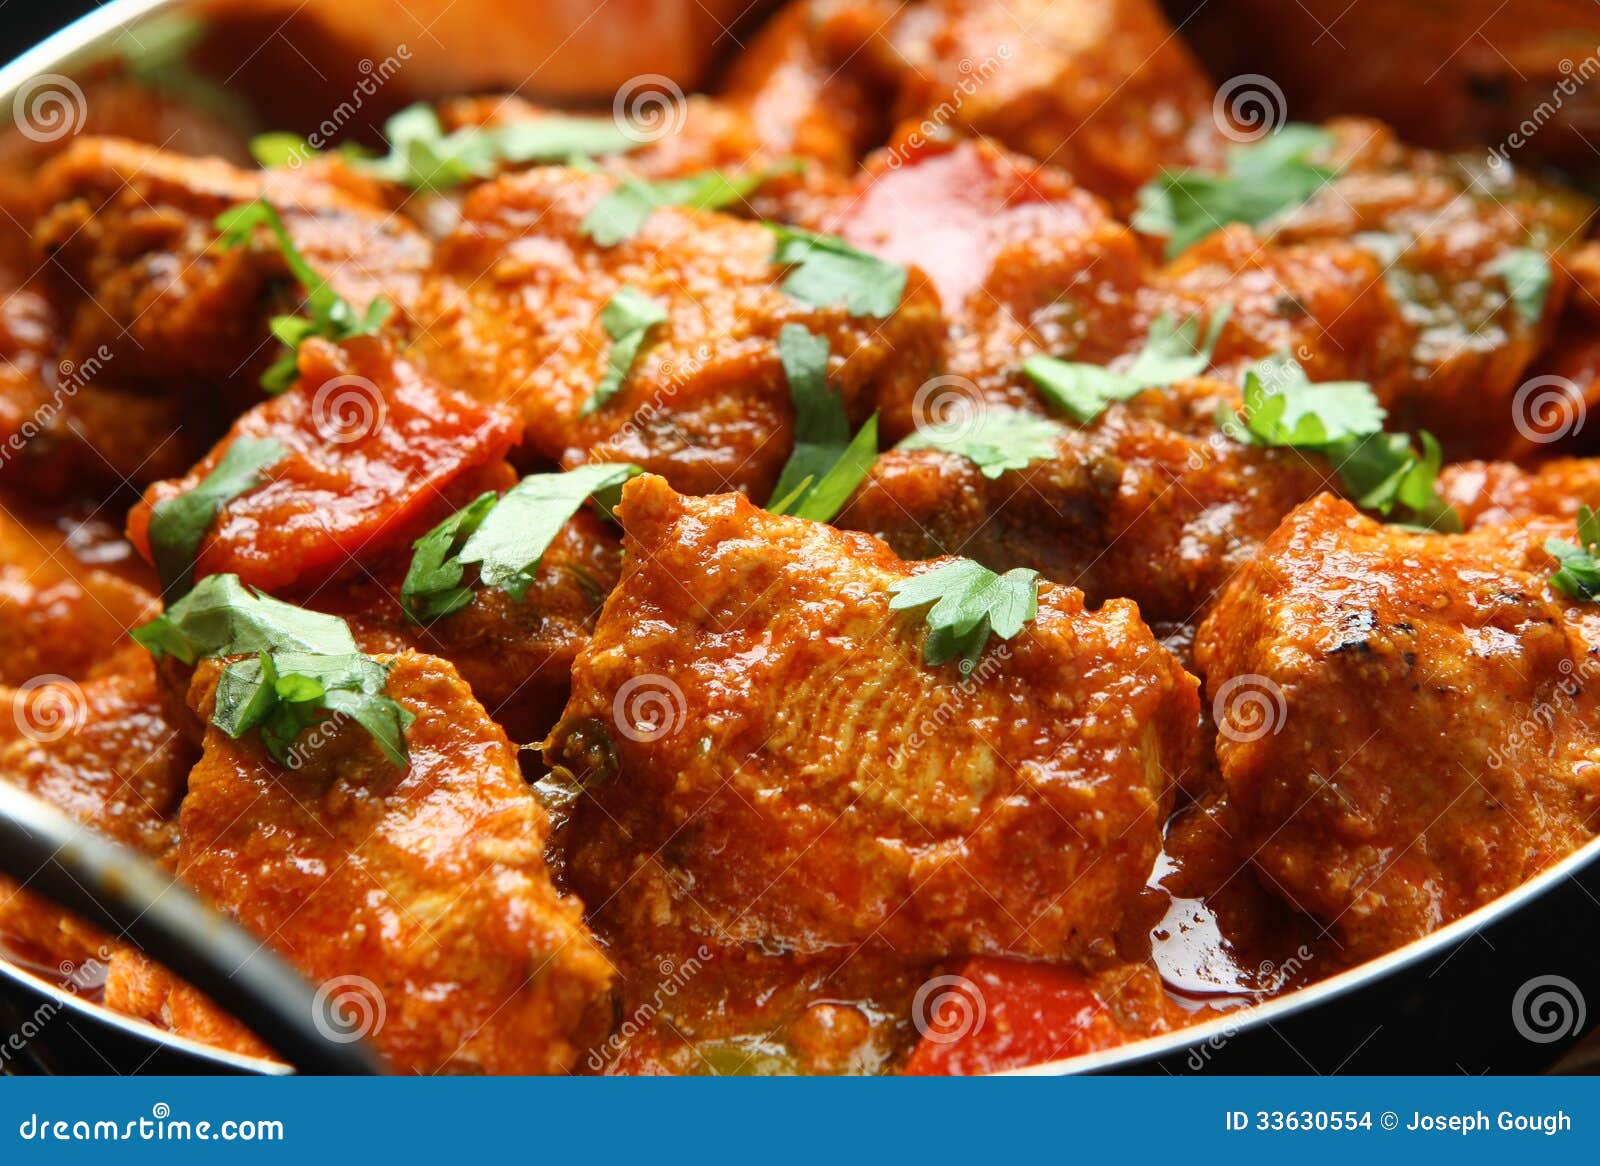 indian-chicken-jalfrezi-curry-food-balti